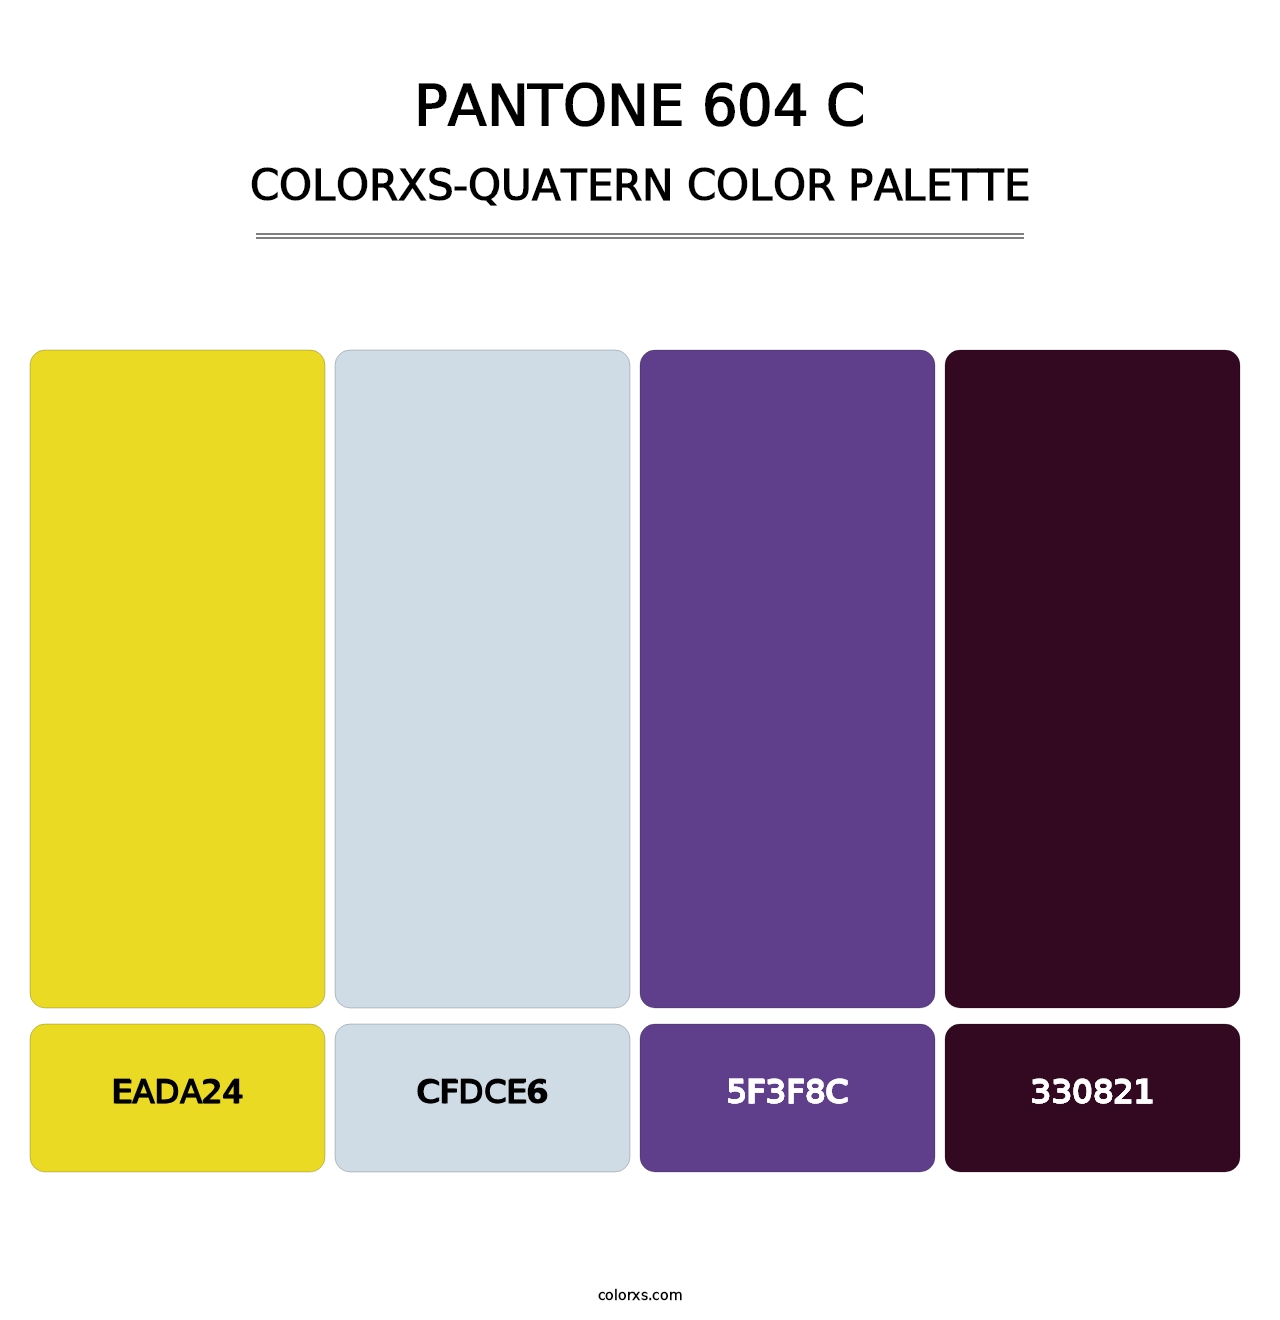 PANTONE 604 C - Colorxs Quatern Palette